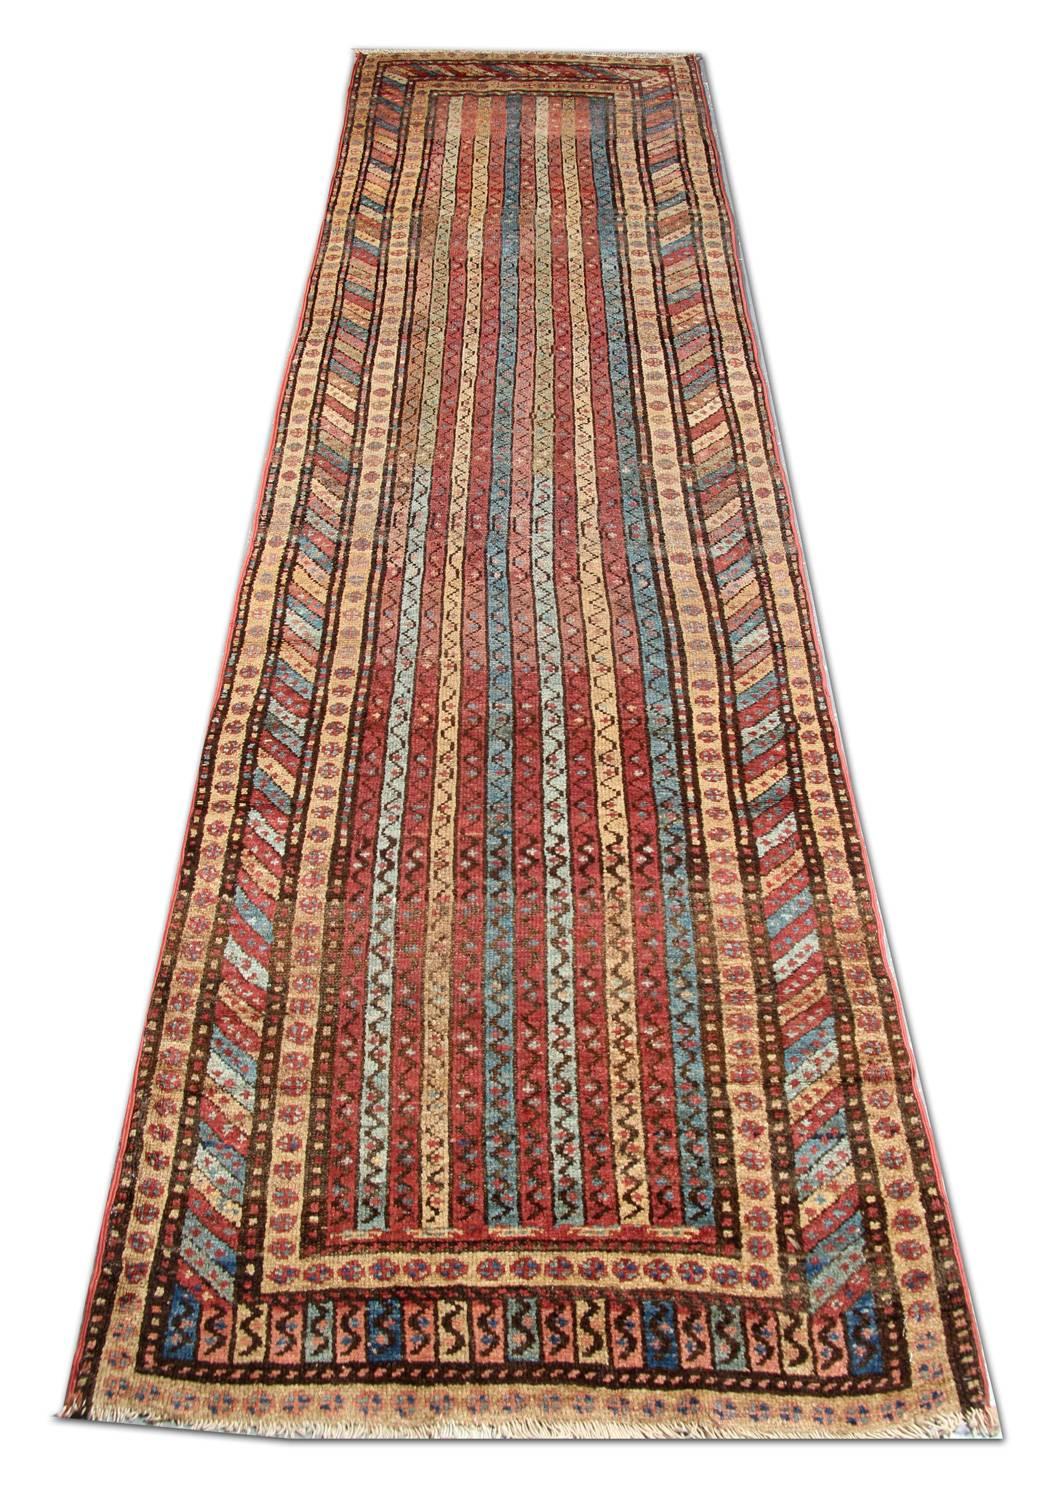 Dieser handgefertigte Orientteppich, der aus traditionellen Nomadenteppichen hervorgegangen ist, ist ein antiker Streifenteppich aus Schirwan mit einer spektakulären Anordnung von modularen Streifen und klassischen Bordürenmotiven, die einen